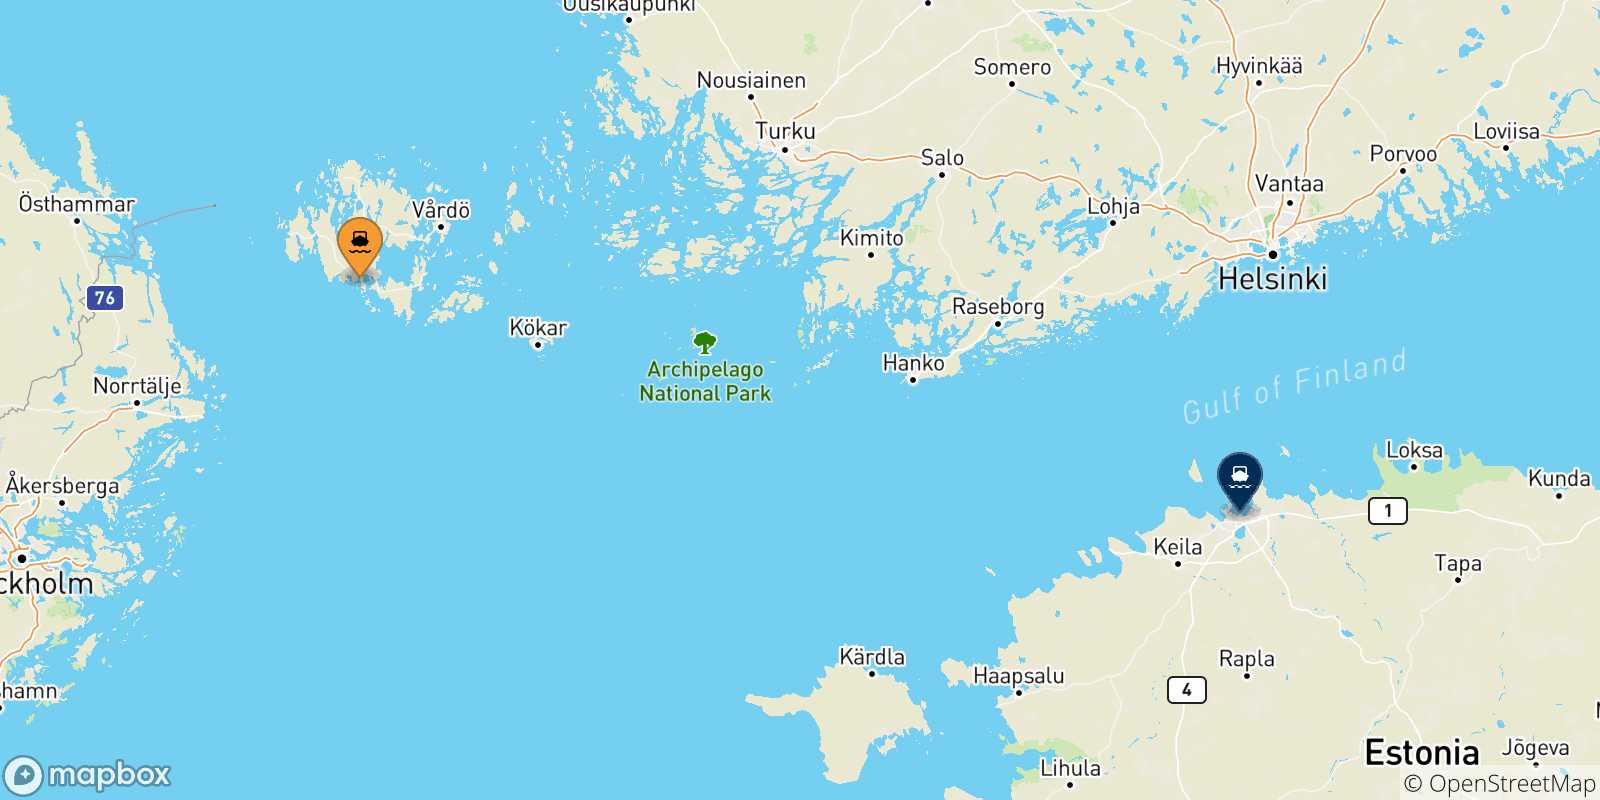 Mappa delle possibili rotte tra le Isole Aland e l'Estonia